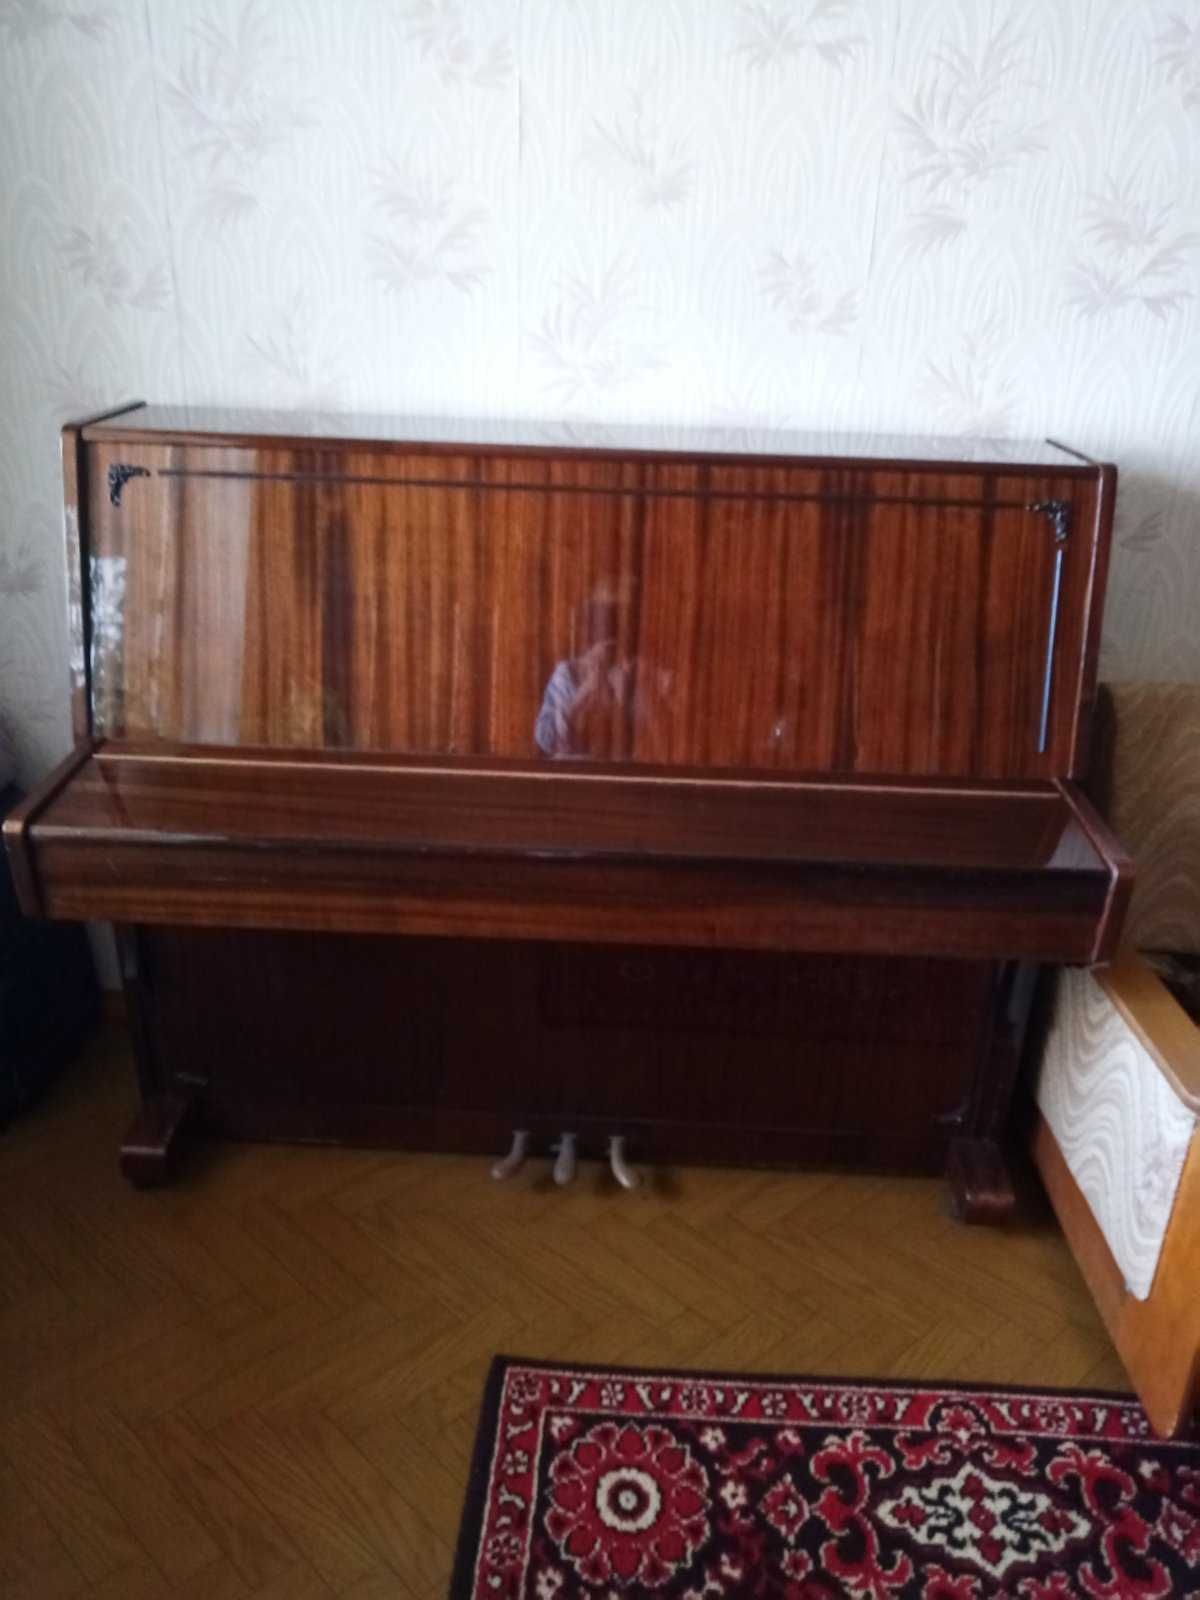 Піаніно "ЛІРІКА"